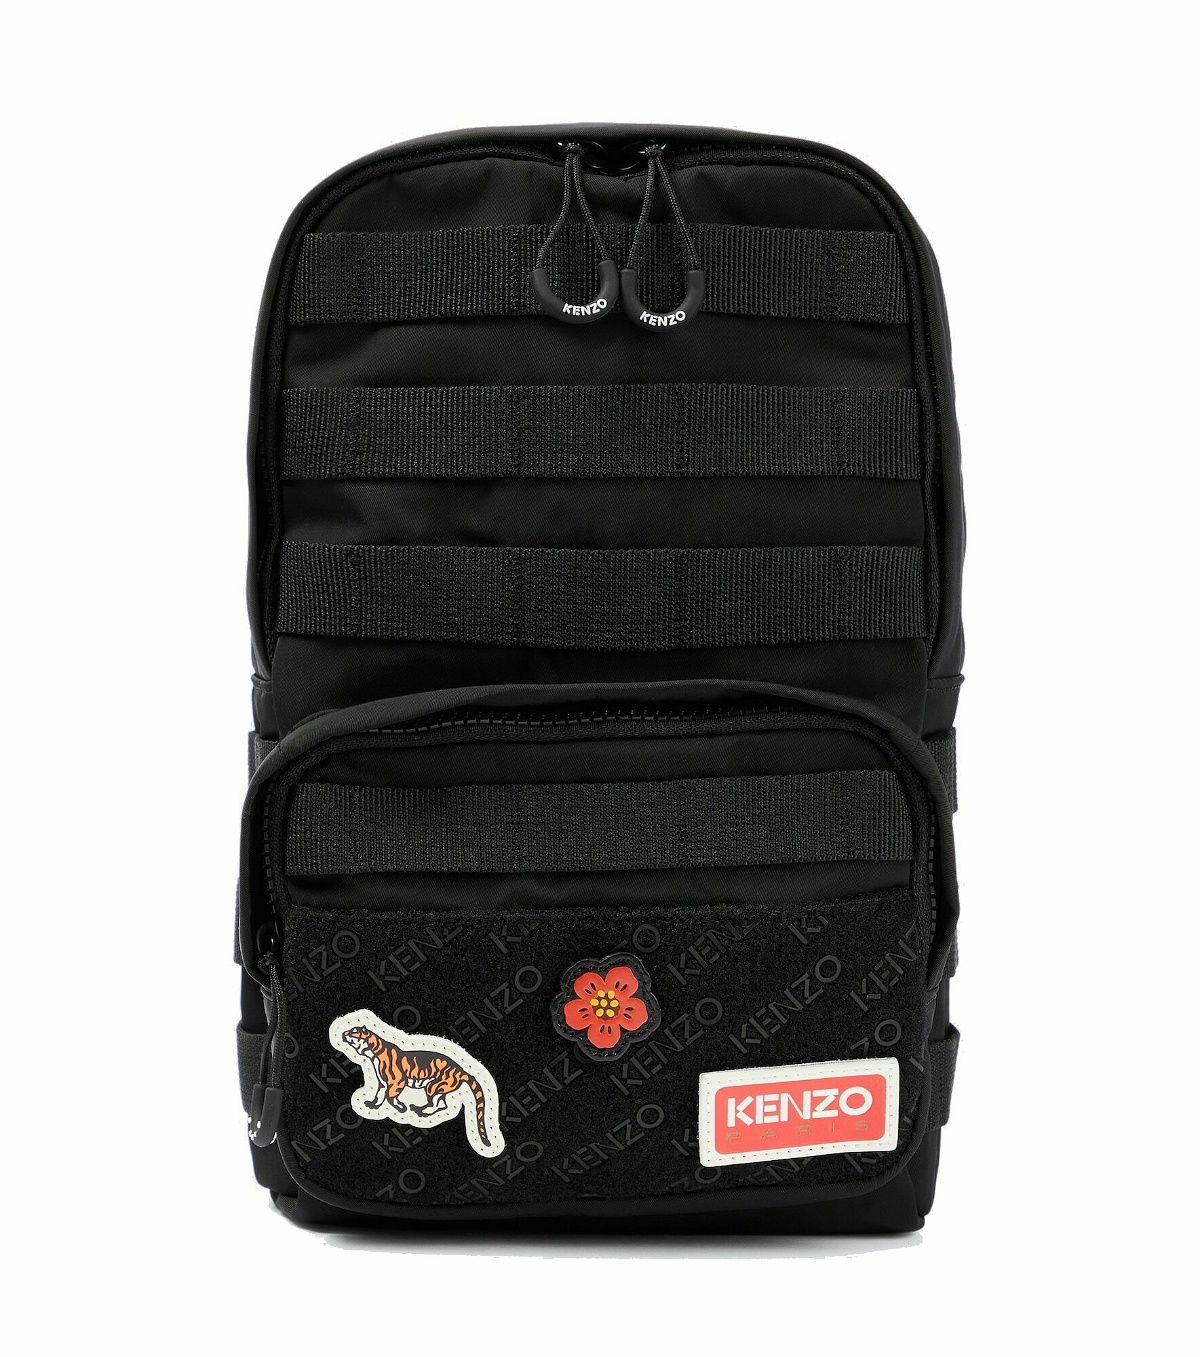 Kenzo - Appliquéd nylon backpack Kenzo